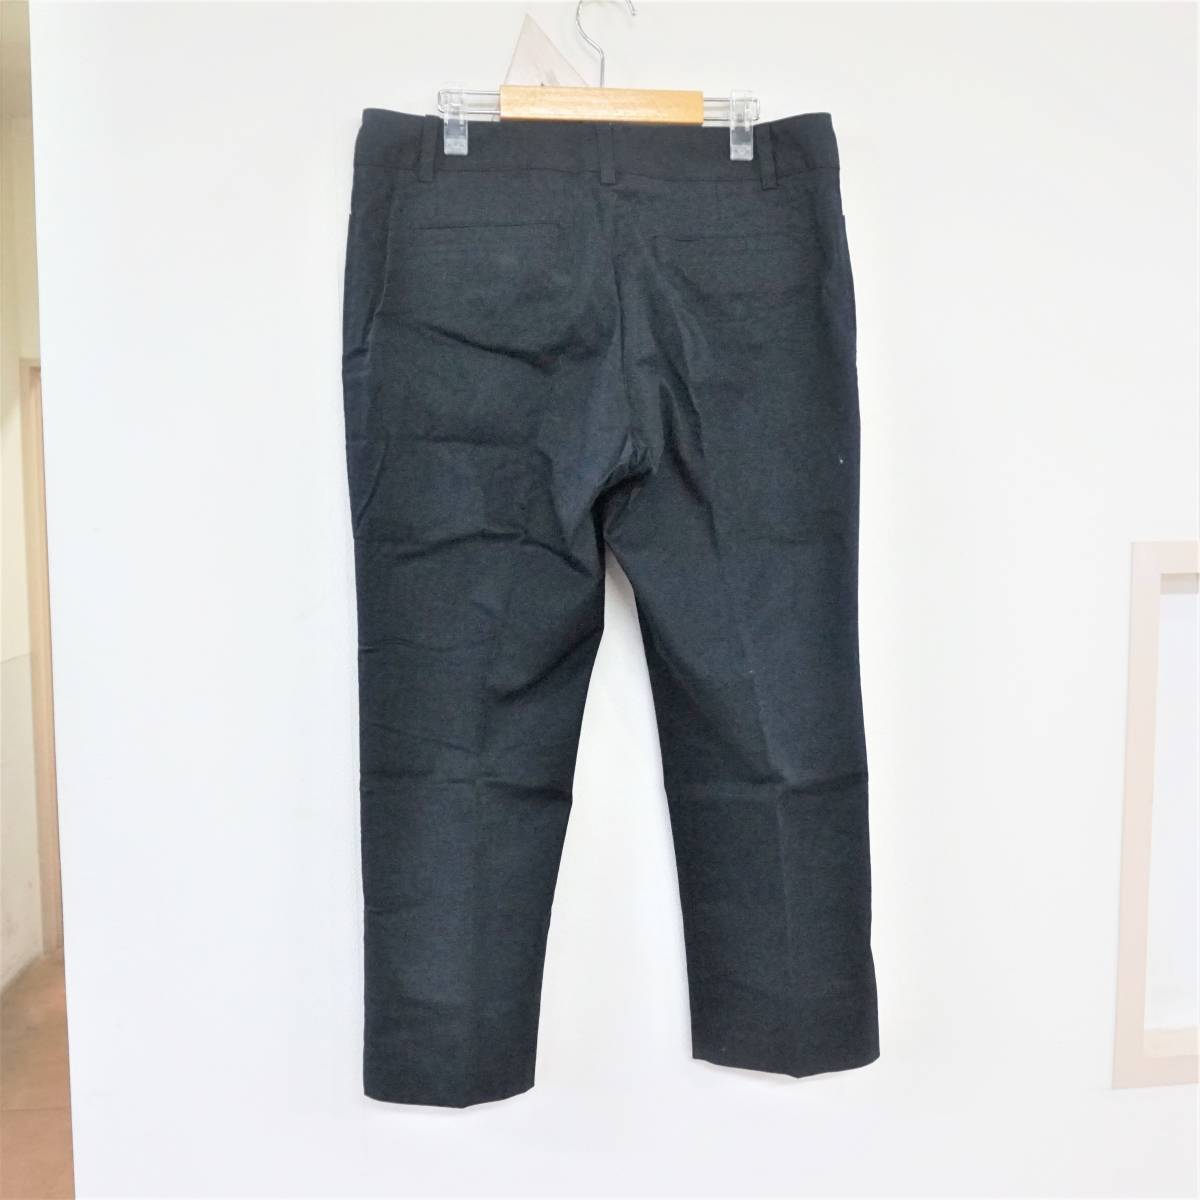  есть перевод INED Ined casual брюки брюки слаксы 15 номер 3L размер черный хлопок хлопок 4805673